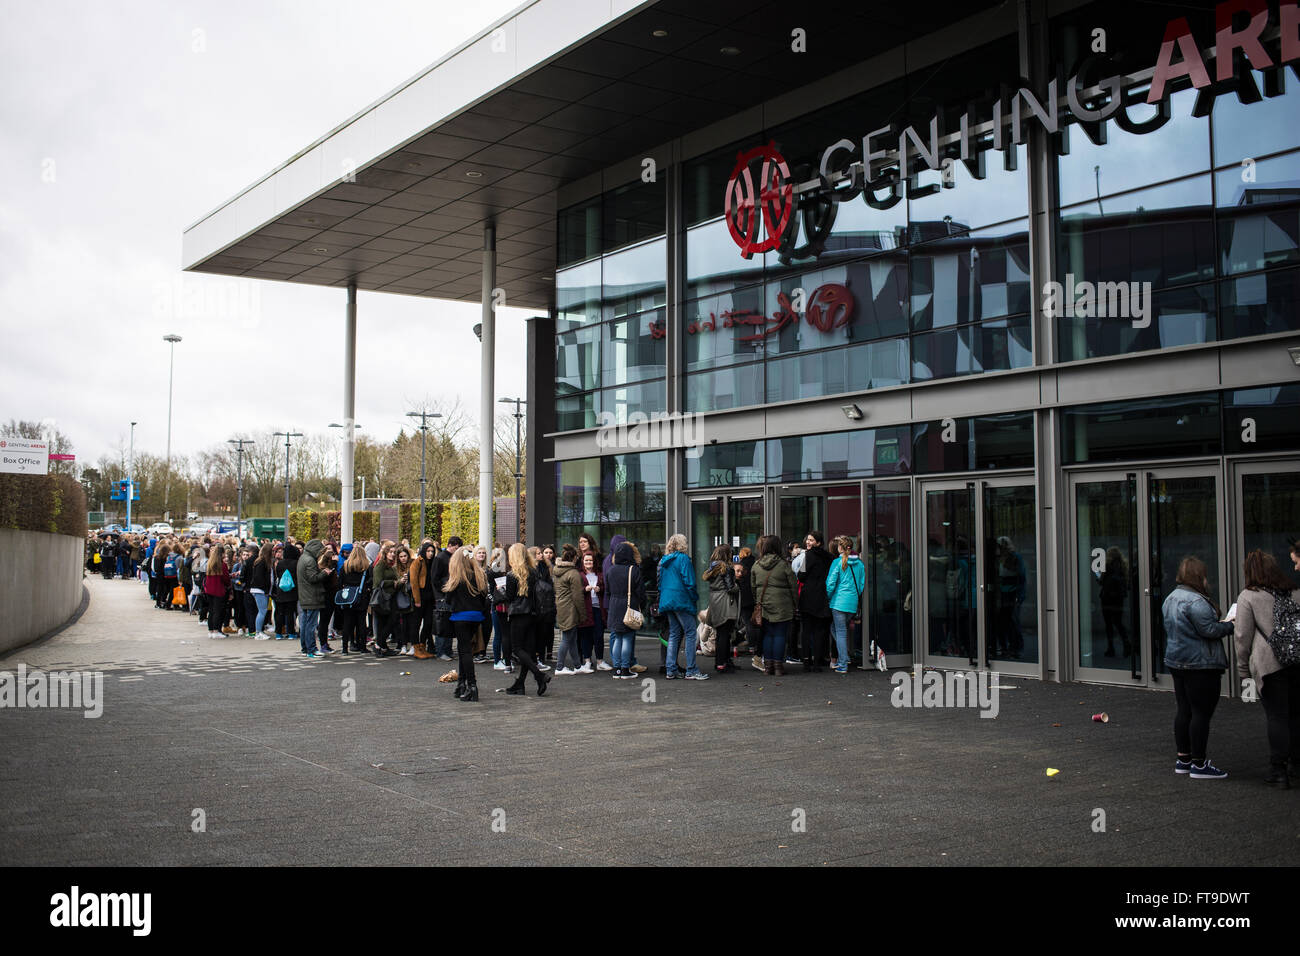 Birmingham, Vereinigtes Königreich. 26. März 2016. Menschen Schlange, um signierten Fotos von The Vamps vor ihrem Konzert heute Abend bekommen. Bildnachweis: Steven Reh/Alamy Live News Stockfoto